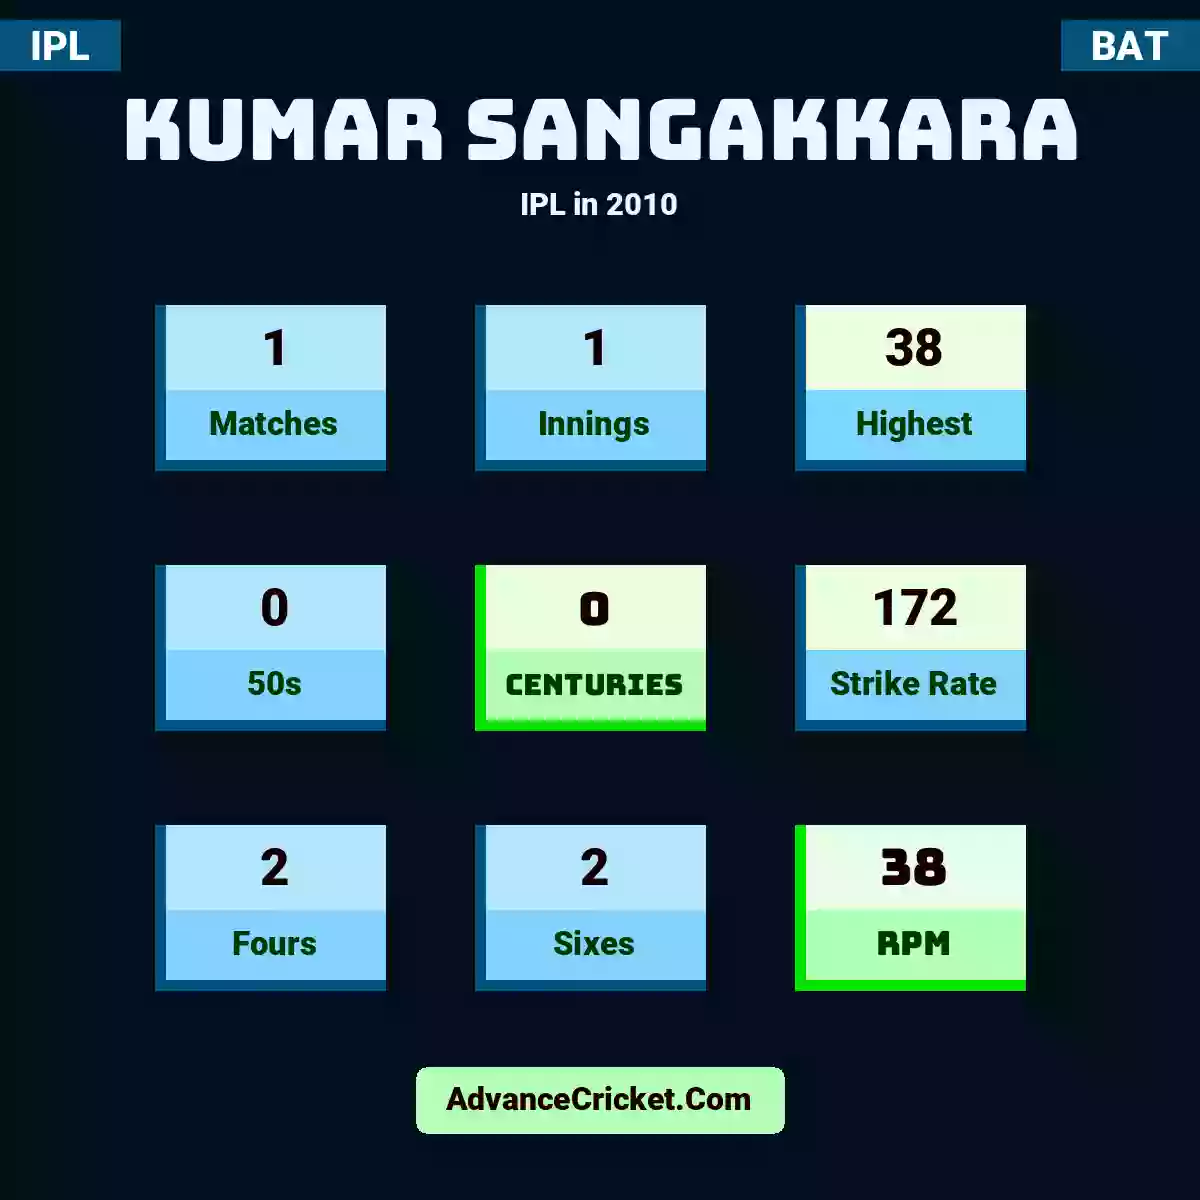 Kumar Sangakkara IPL  in 2010, Kumar Sangakkara played 13 matches, scored 56 runs as highest, 2 half-centuries, and 0 centuries, with a strike rate of 138. K.Sangakkara hit 47 fours and 5 sixes, with an RPM of 27.